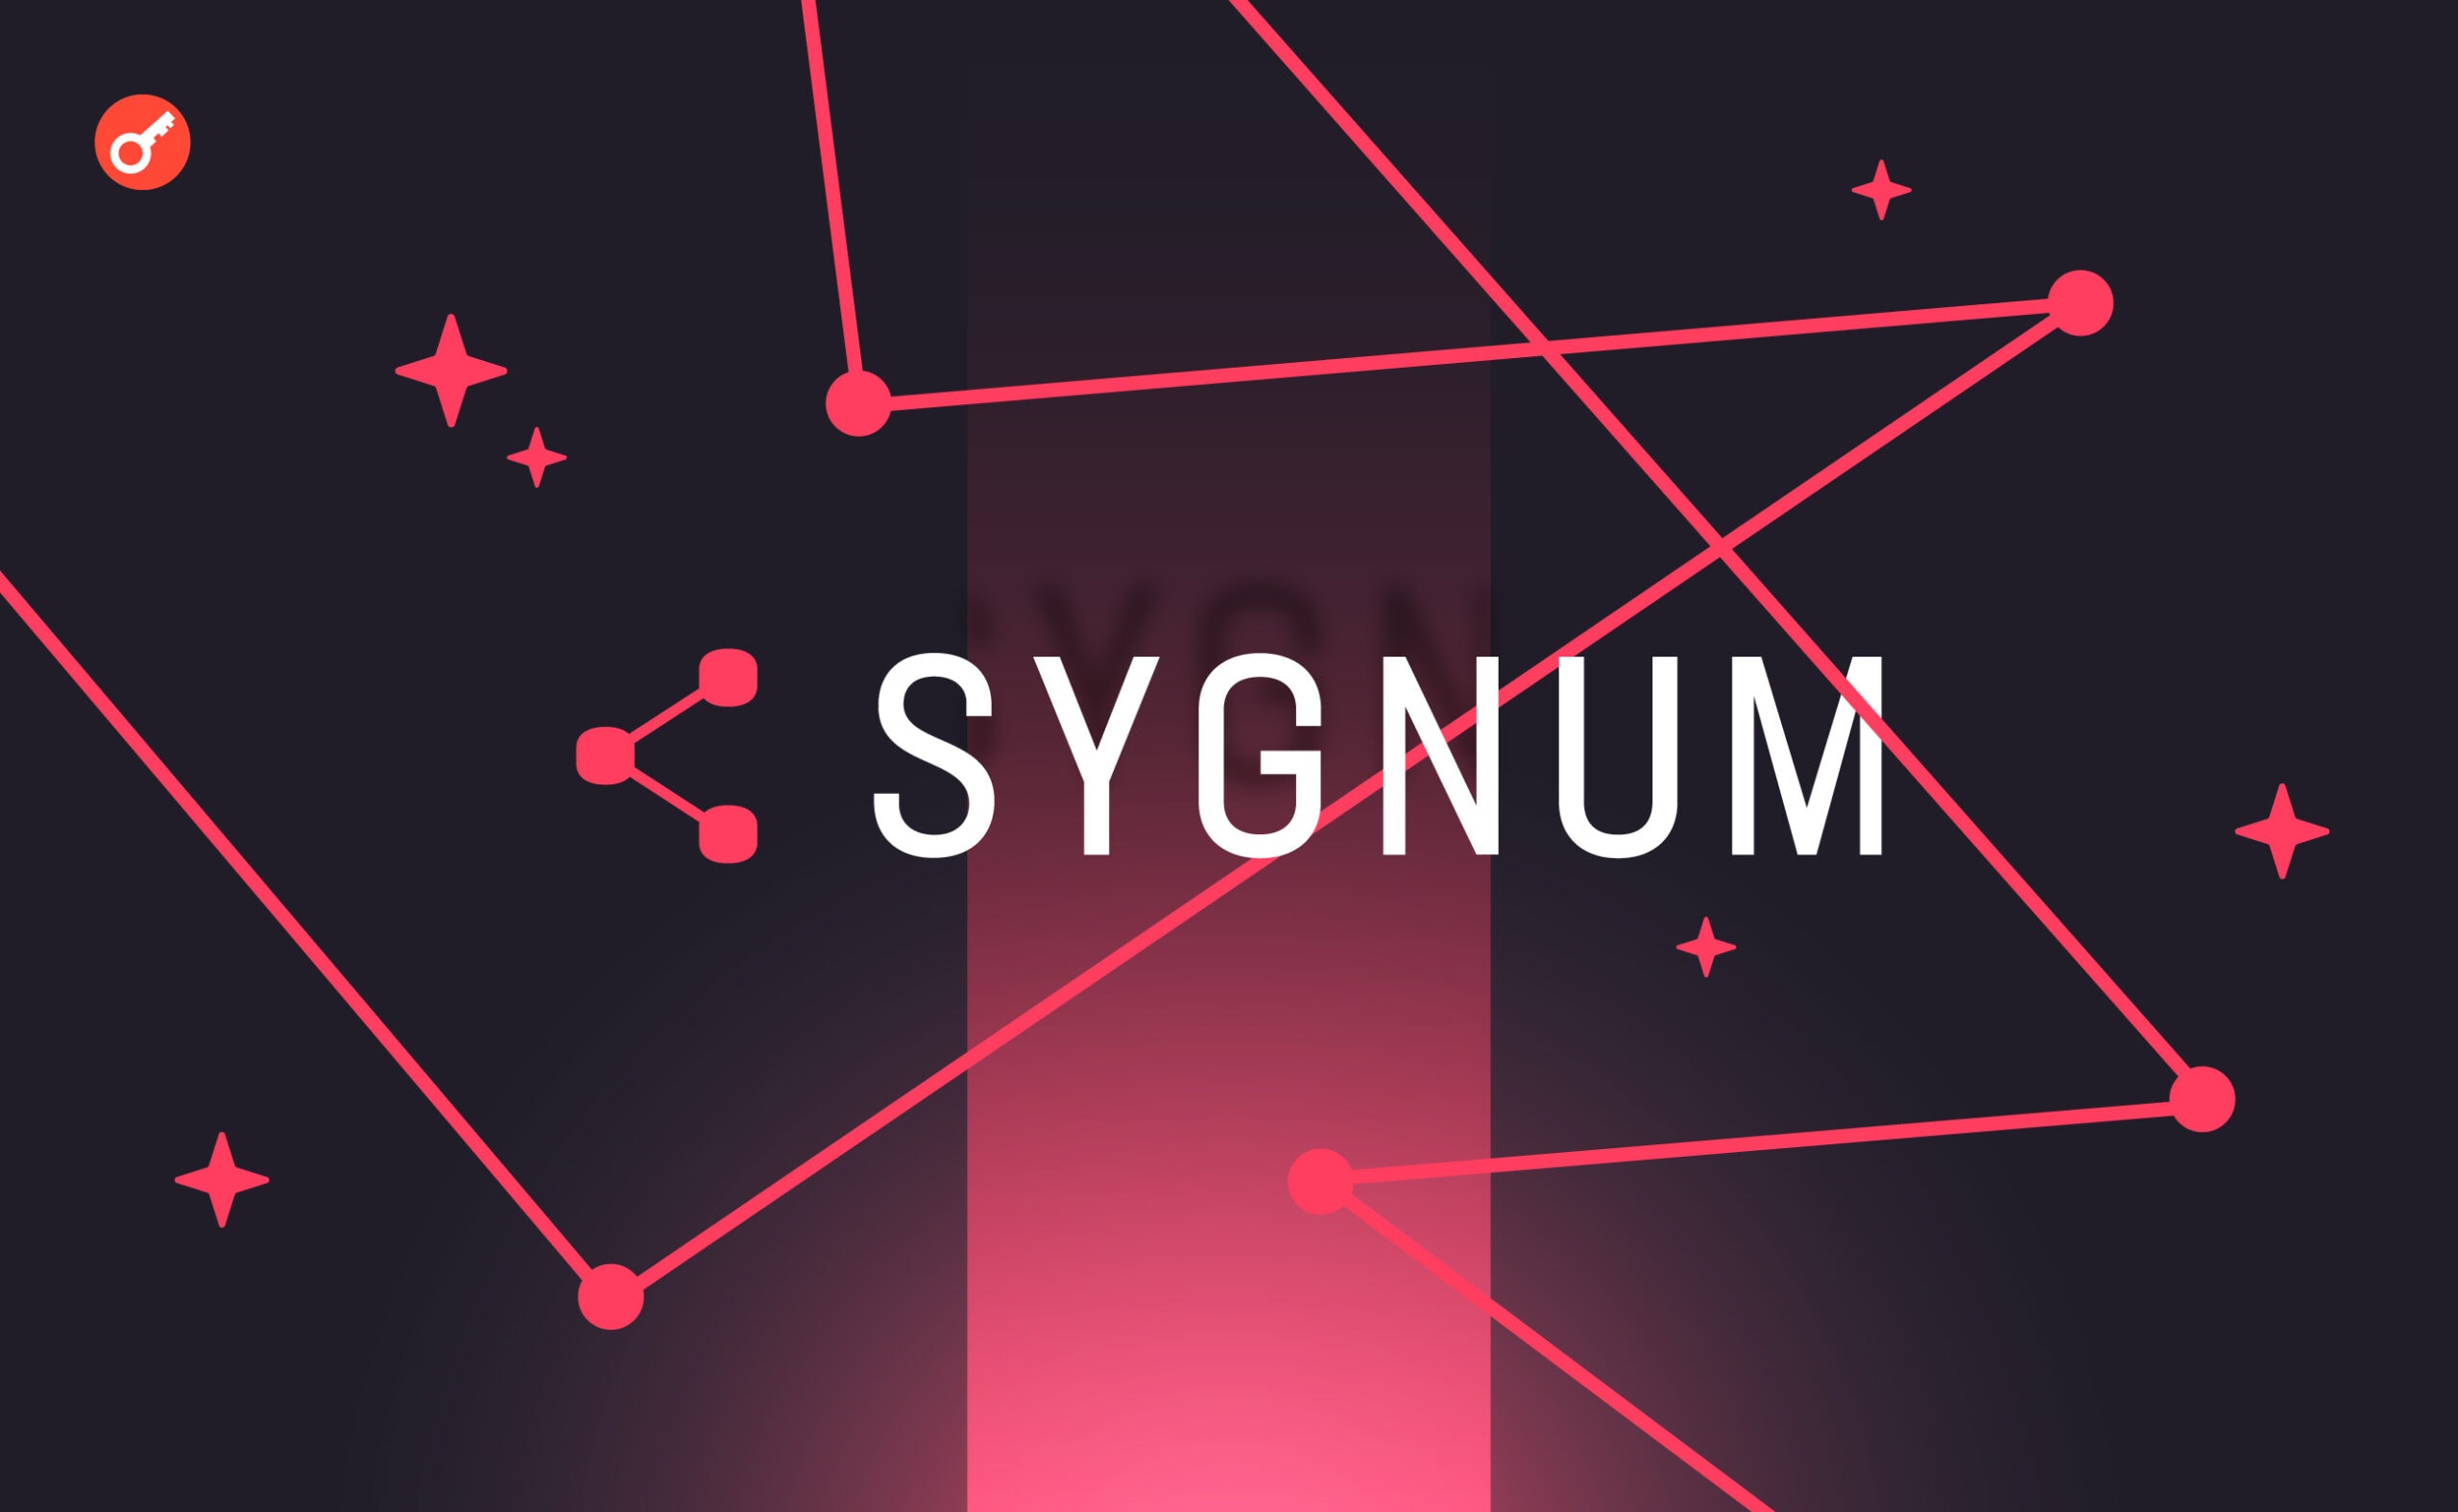 Sygnum відзначає зростання попиту на криптовалюту серед інституційних інвесторів. Головний колаж новини.